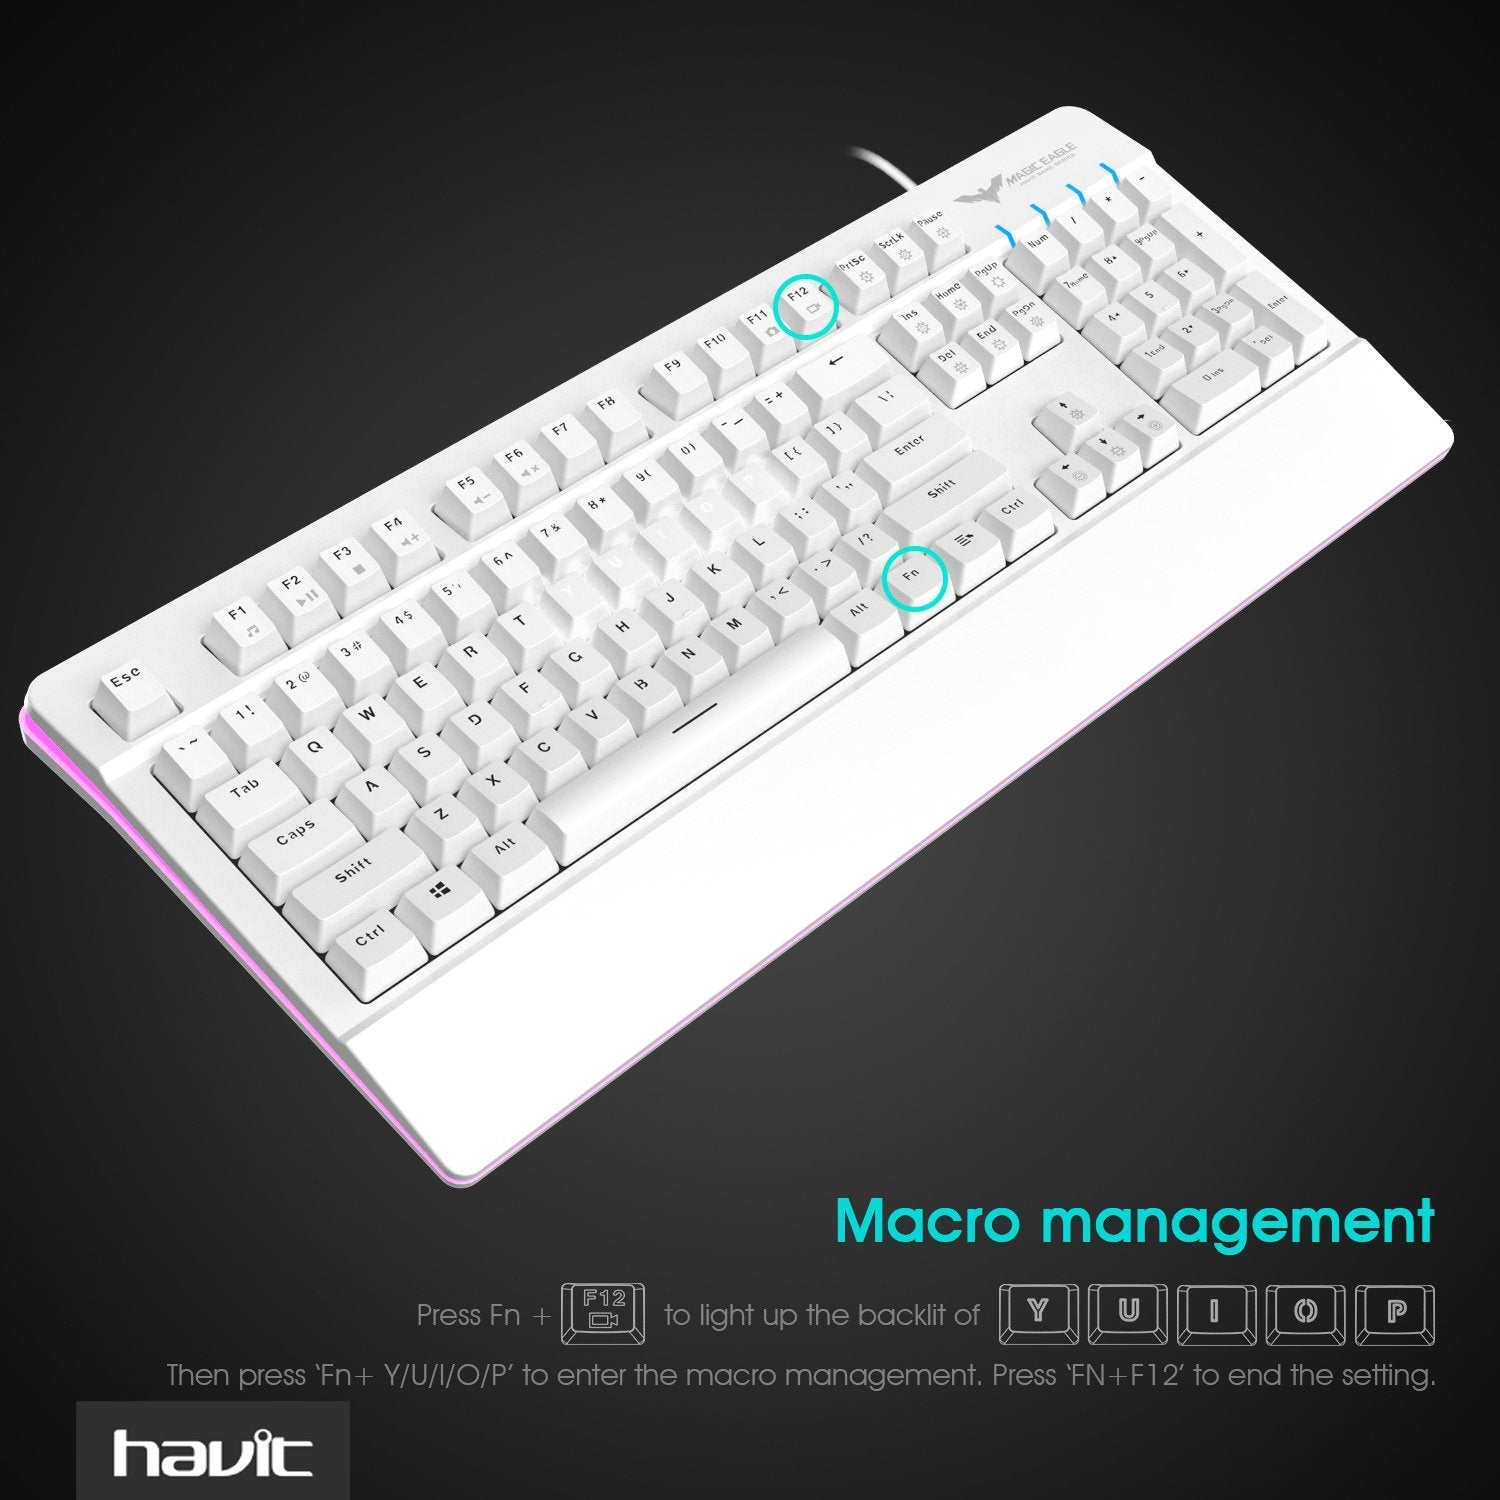 HAVIT HV-KB389L RGB Backlit Mechanical Gaming Keyboard